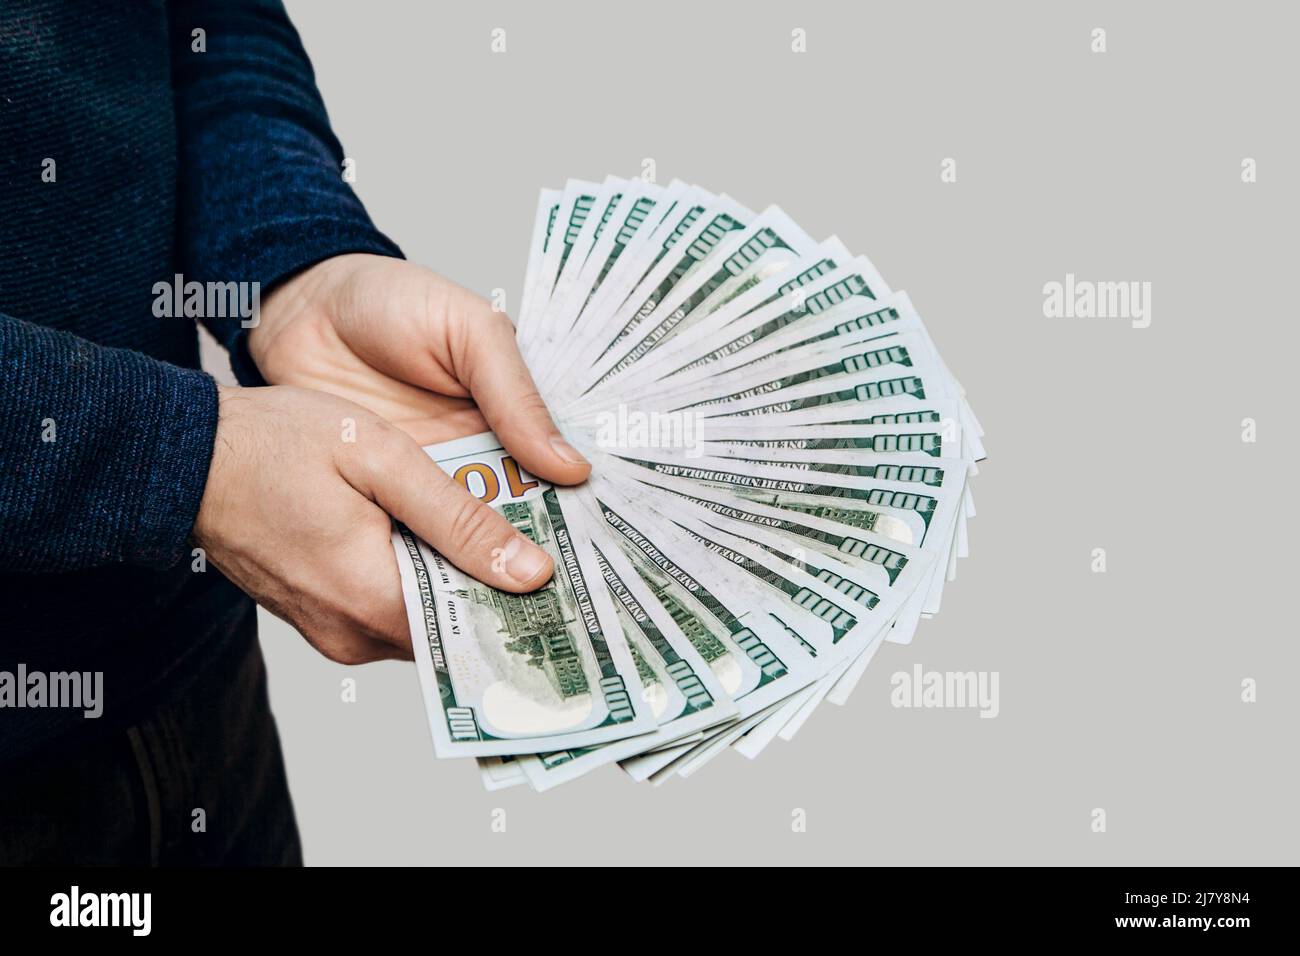 Un homme tient un fan de 100 billets de dollars dans ses mains sur fond clair Banque D'Images